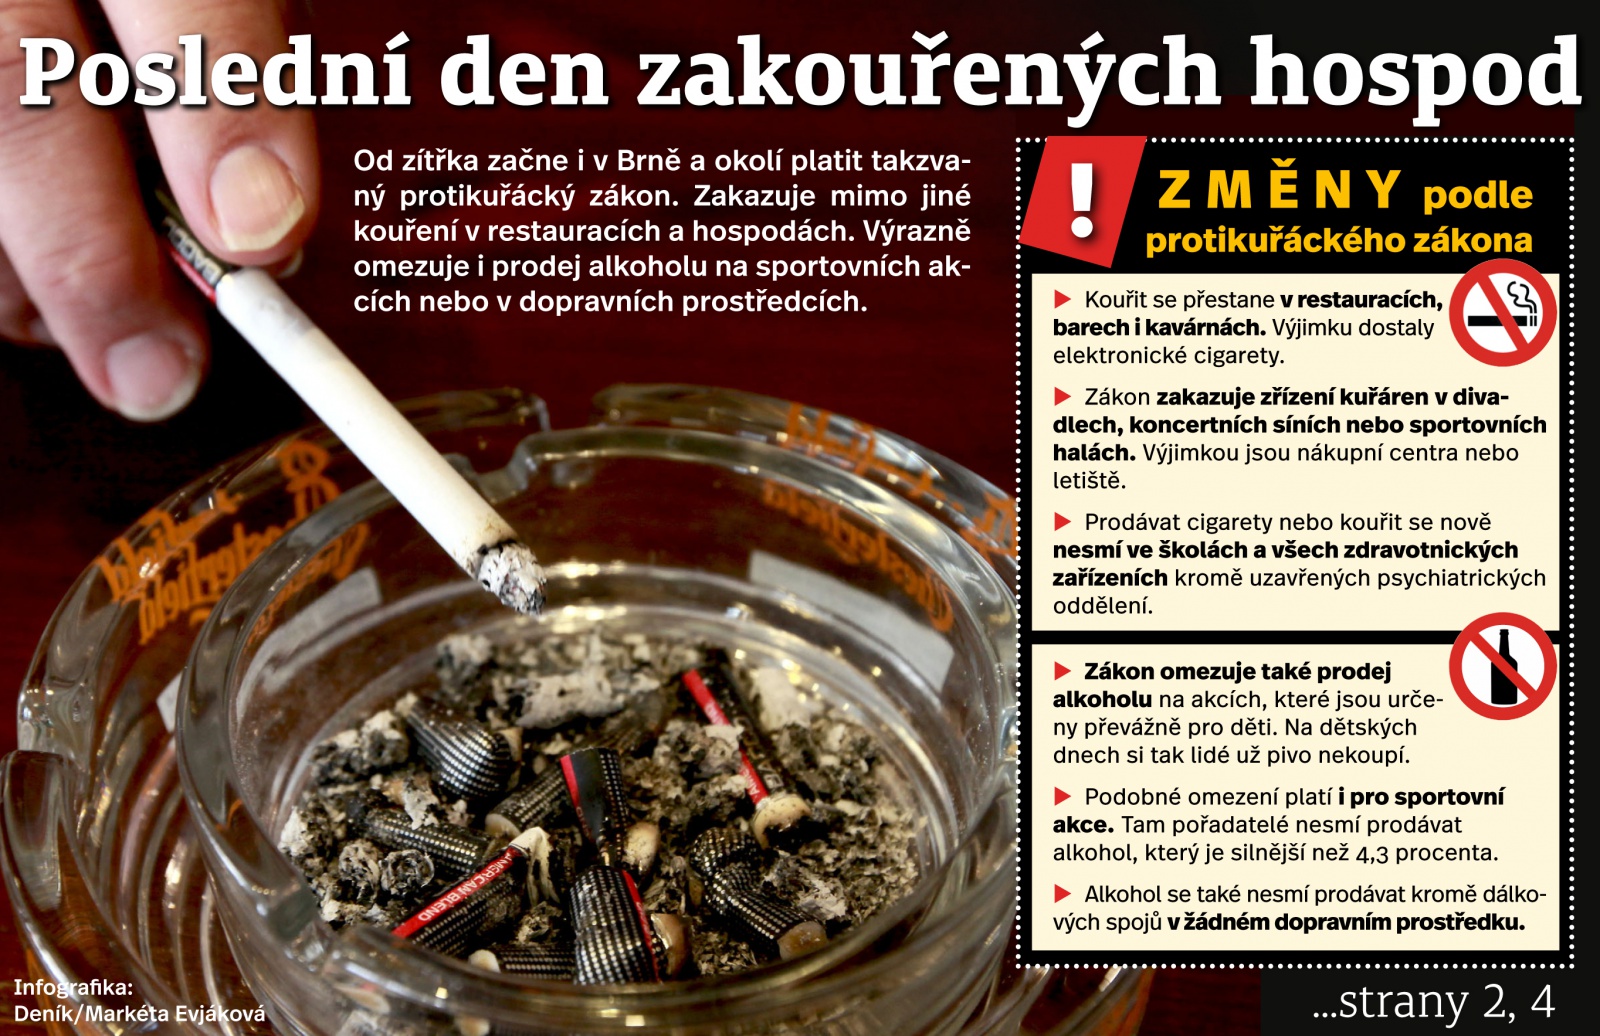 Poslední den kouření v hospodách: Kuřáci mi říkali, že chodit nebudou,  tvrdí muž - Břeclavský deník